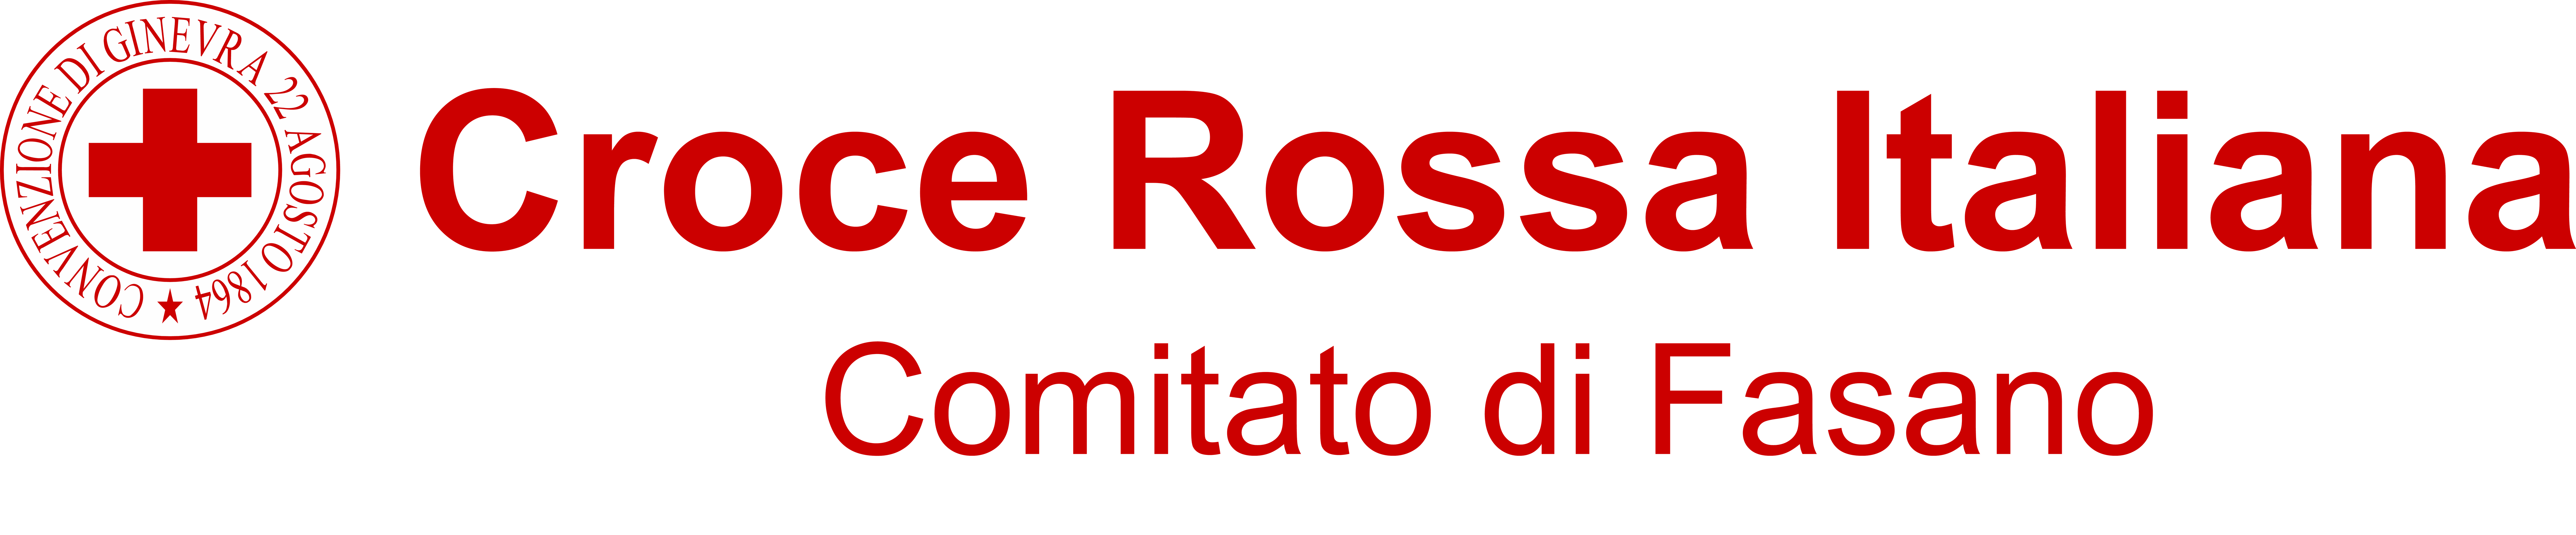 Croce Rossa Italiana Comitato di Fasano